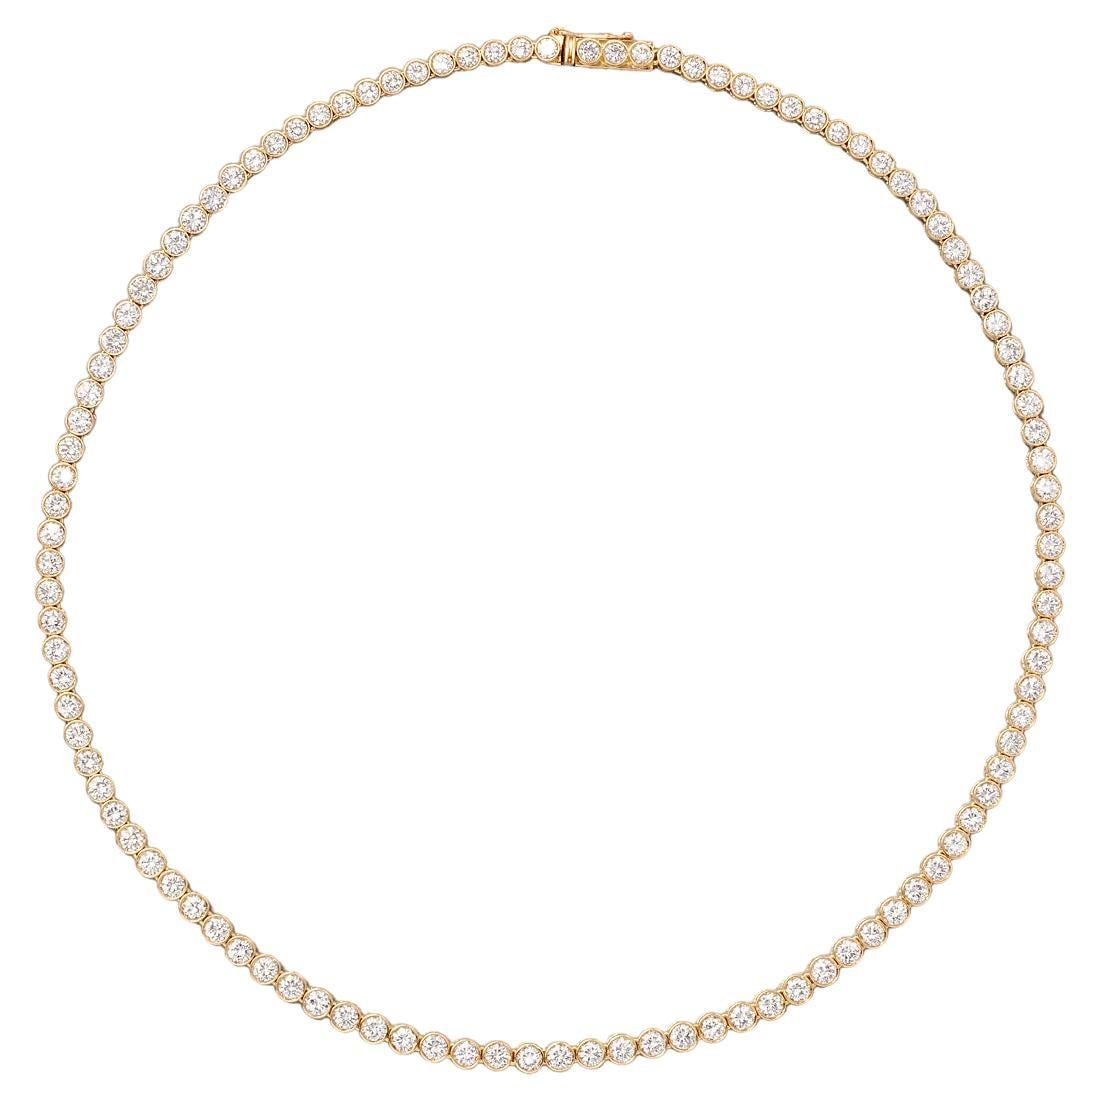 An 18 Carat Gold Bulgari Necklace with Diamonds